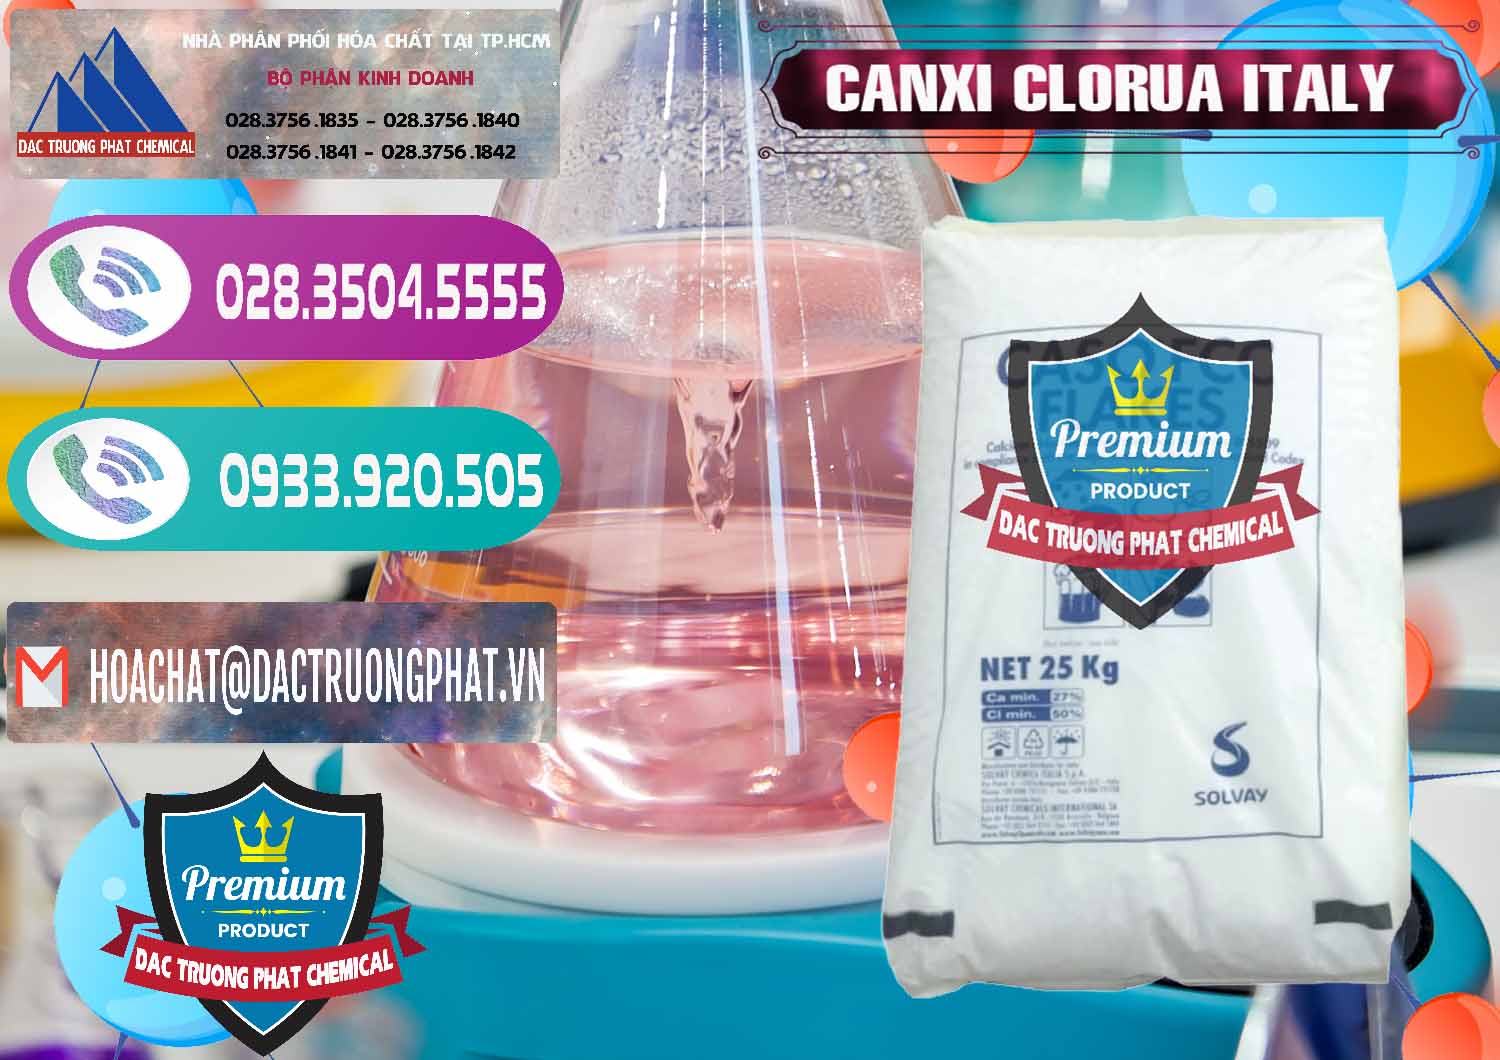 Cty bán & cung ứng CaCl2 – Canxi Clorua Food Grade Ý Italy - 0435 - Nơi chuyên bán _ cung cấp hóa chất tại TP.HCM - hoachatxulynuoc.com